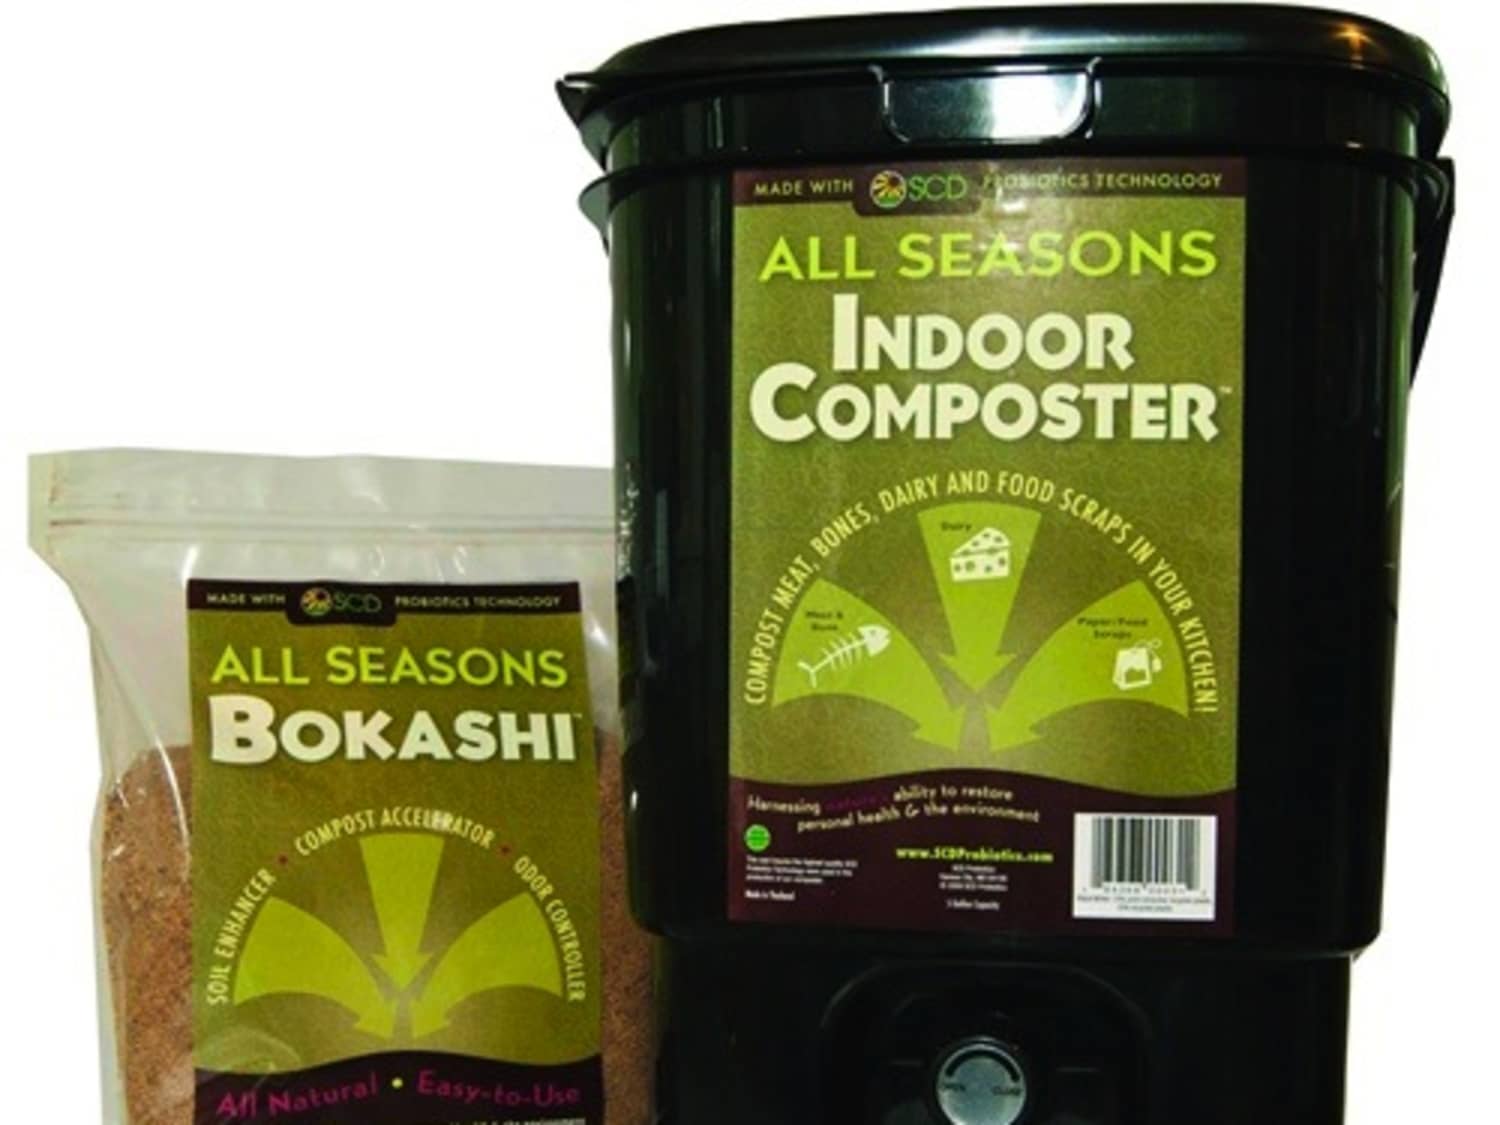 Kitchen Composter, Bokashi Indoor System